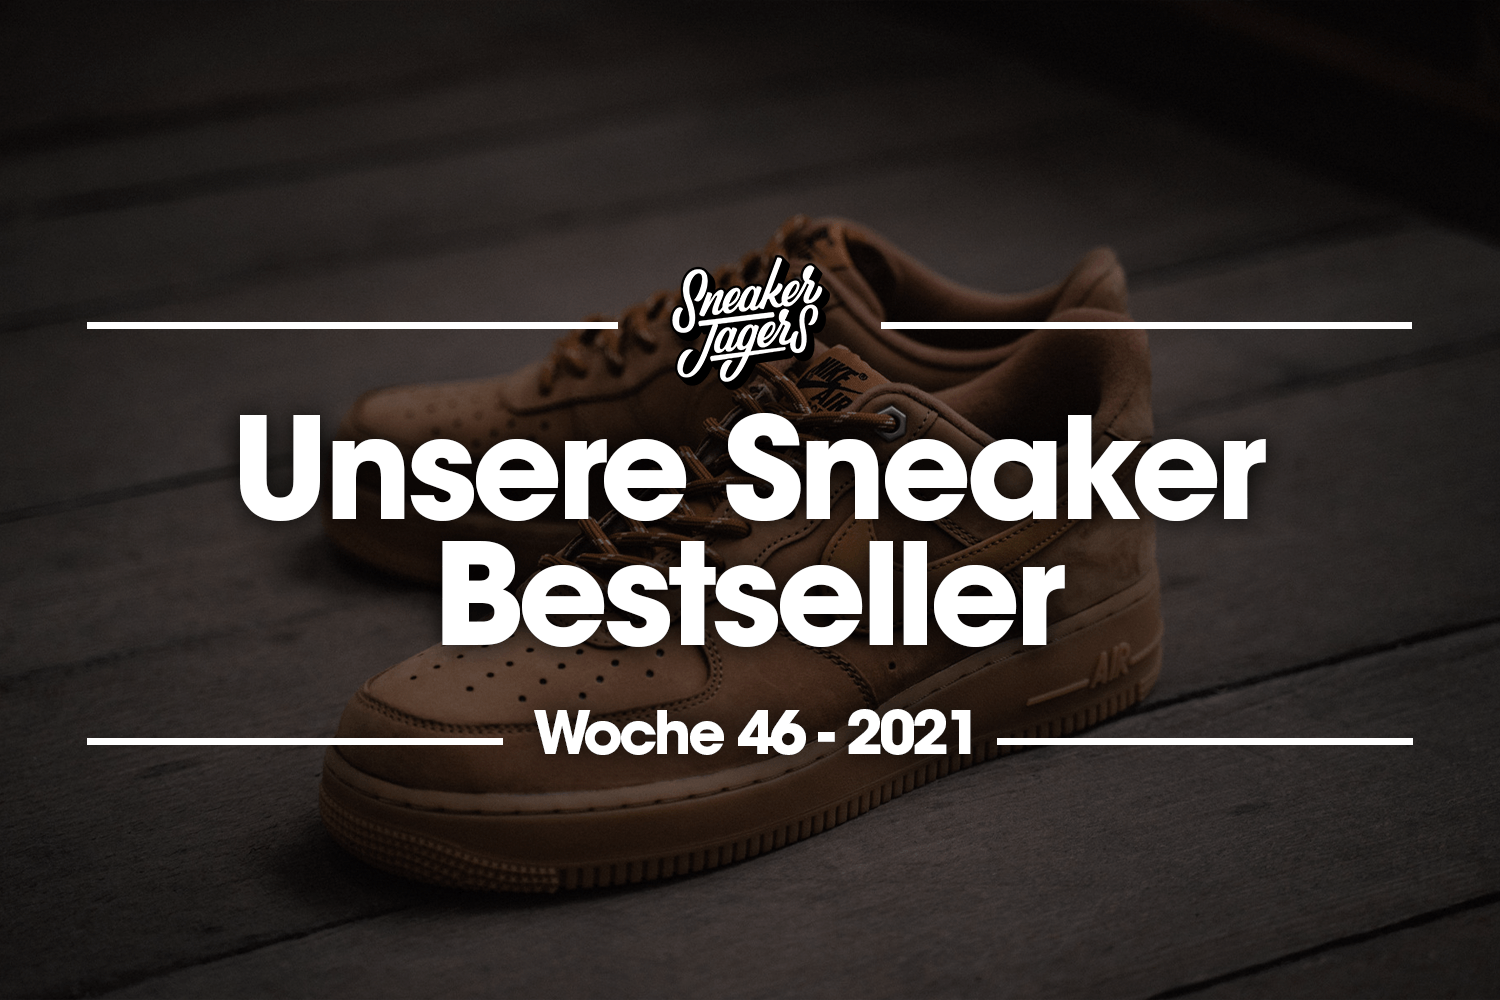 Unsere Sneaker Bestseller - Woche 46 - Das ist im Trend